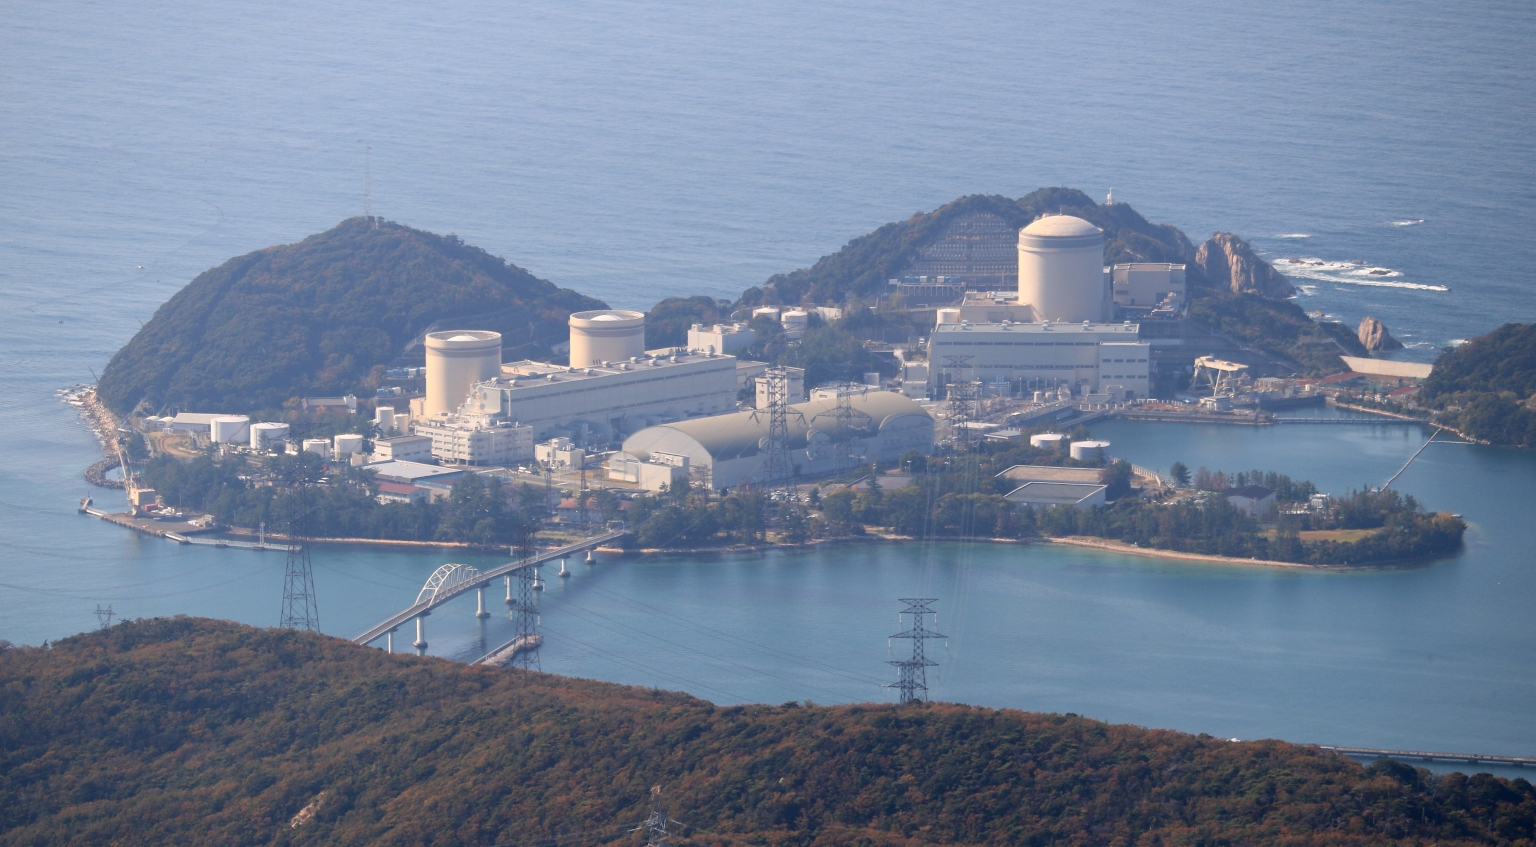 Zum Erreichen seiner Klimaziele setzt Japan auf einen Mix aus erneuerbaren Energien und Kernenergie. Im Bild das Kernkraftwerk Mihama, das im Juni 2021 den Betrieb wieder aufnahm.